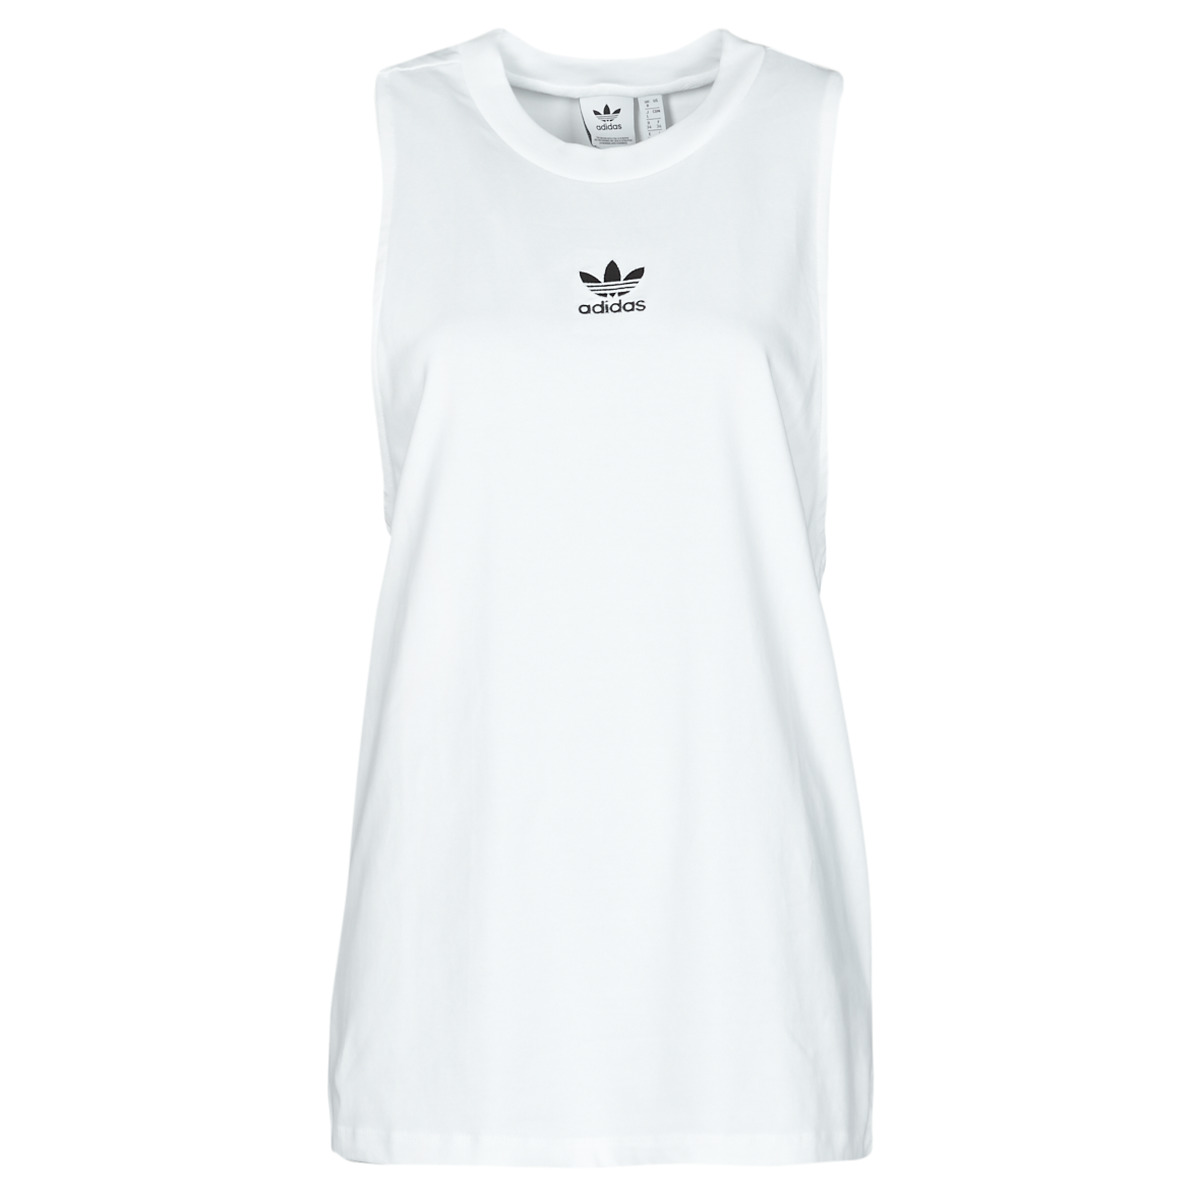 textil Dame Toppe / T-shirts uden ærmer adidas Originals TANK Hvid